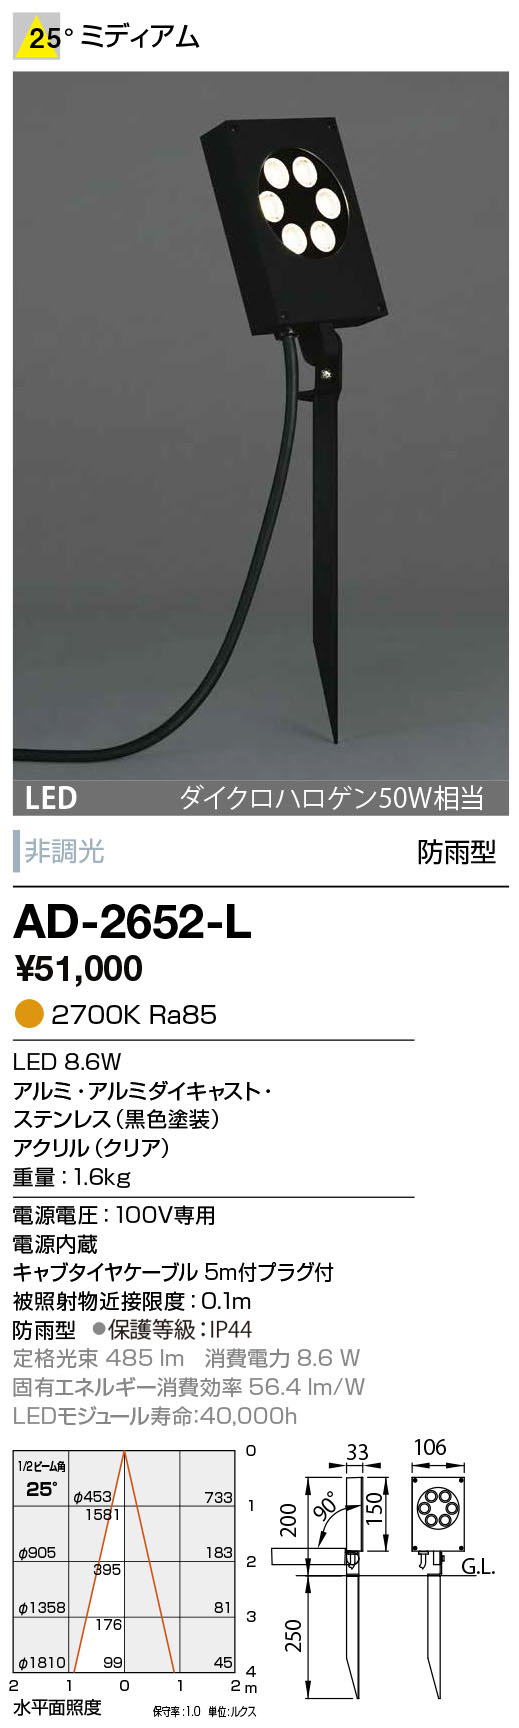 山田照明 AD-3220-LL エクステリア LED人感センサー付スポットライト ディマブル75 ダイクロハロゲン50W相当 マルチレンズ 位相調光  電球色 24°ミディアム 山田照明